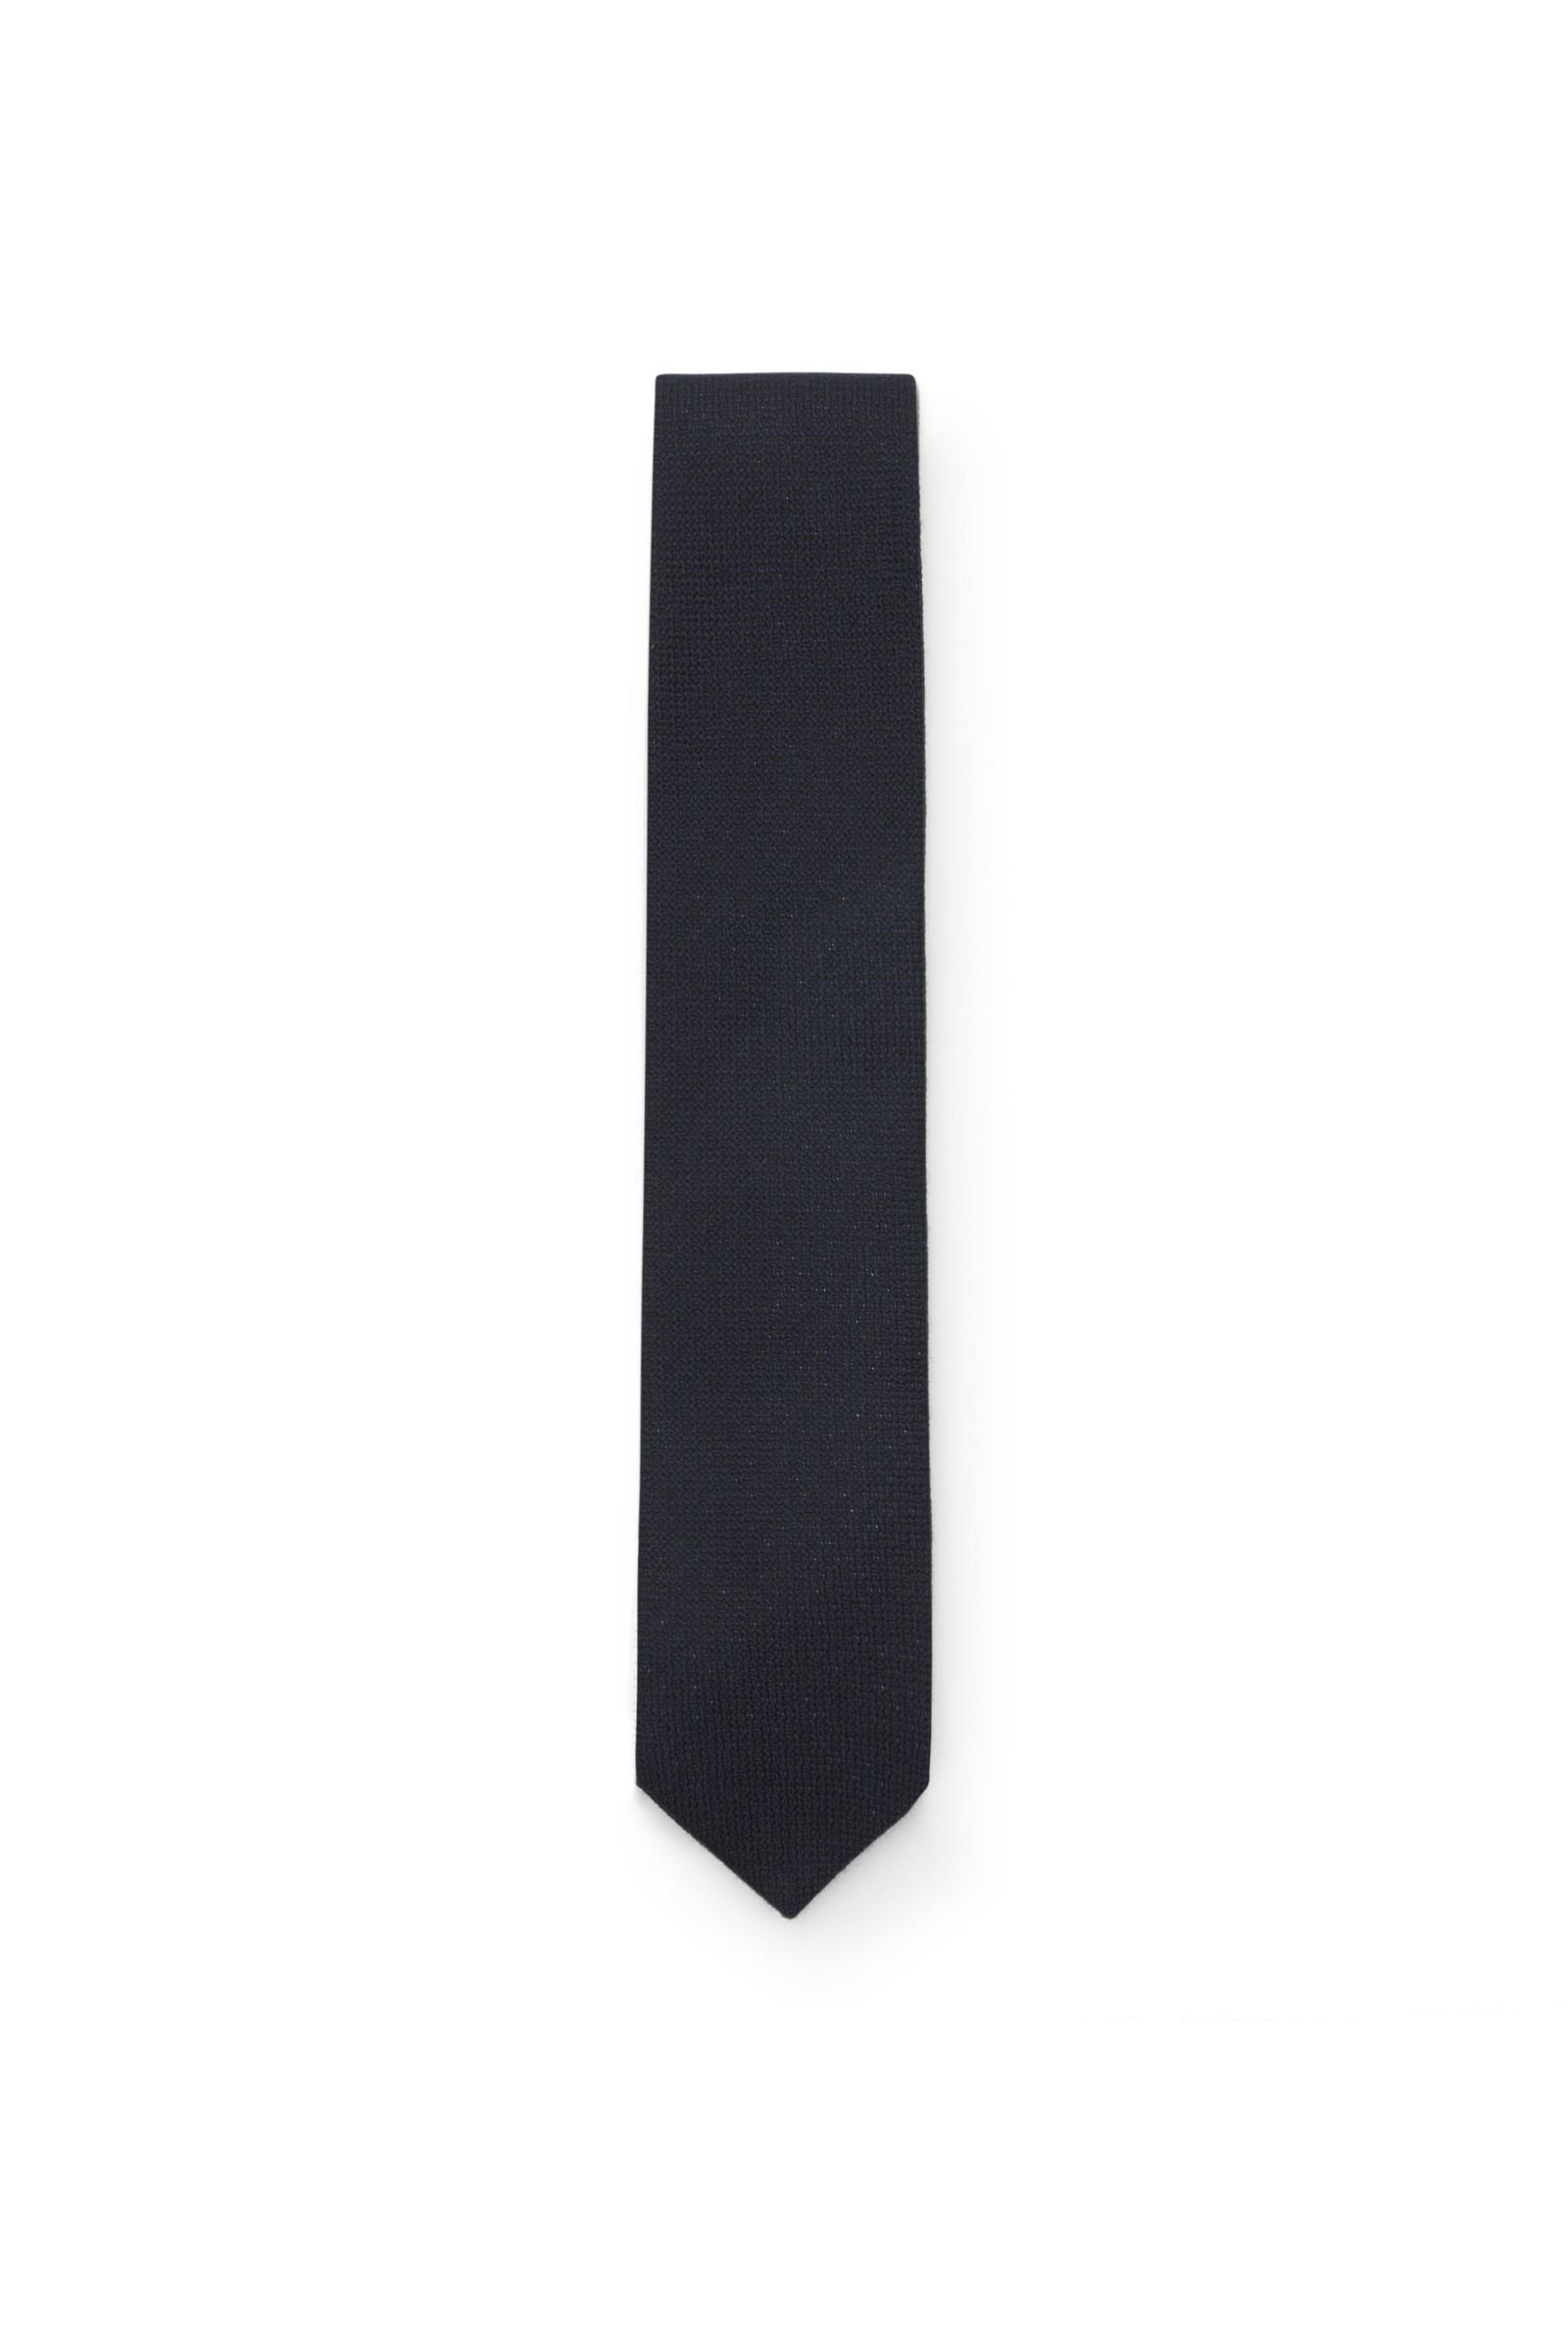 Cashmere Krawatte dark navy